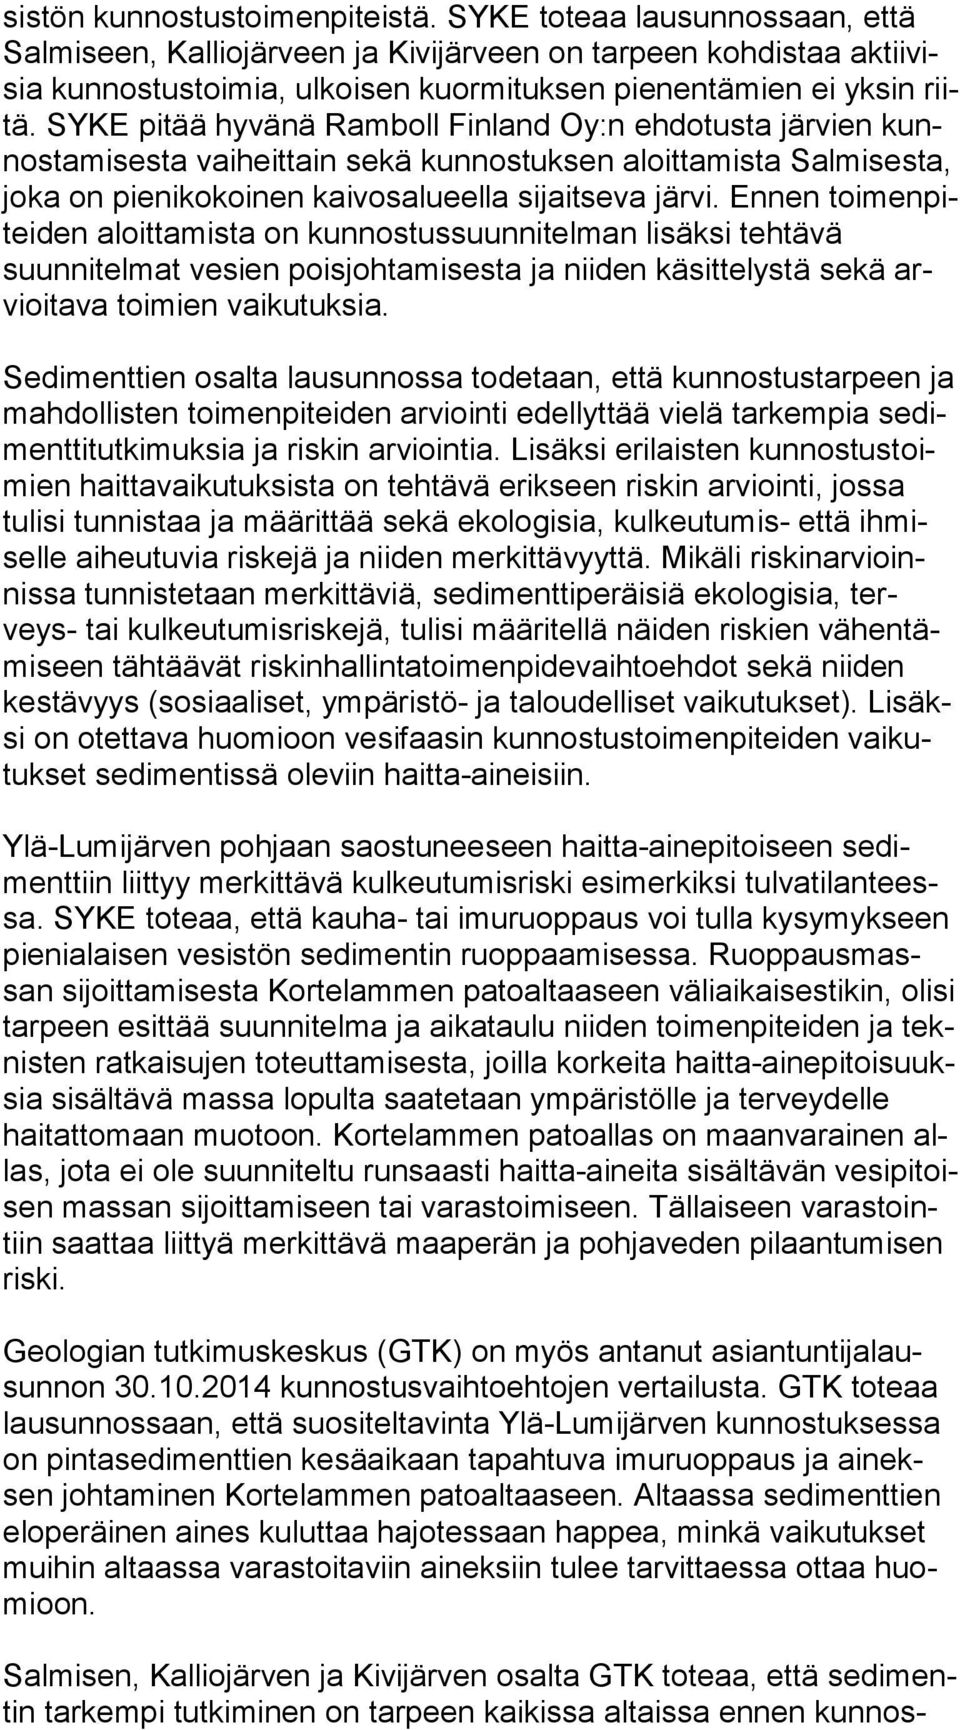 SYKE pitää hyvänä Ramboll Finland Oy:n ehdotusta järvien kunnos ta mi ses ta vaiheittain sekä kunnostuksen aloittamista Sal mi ses ta, joka on pienikokoinen kaivosalueella sijaitseva järvi.